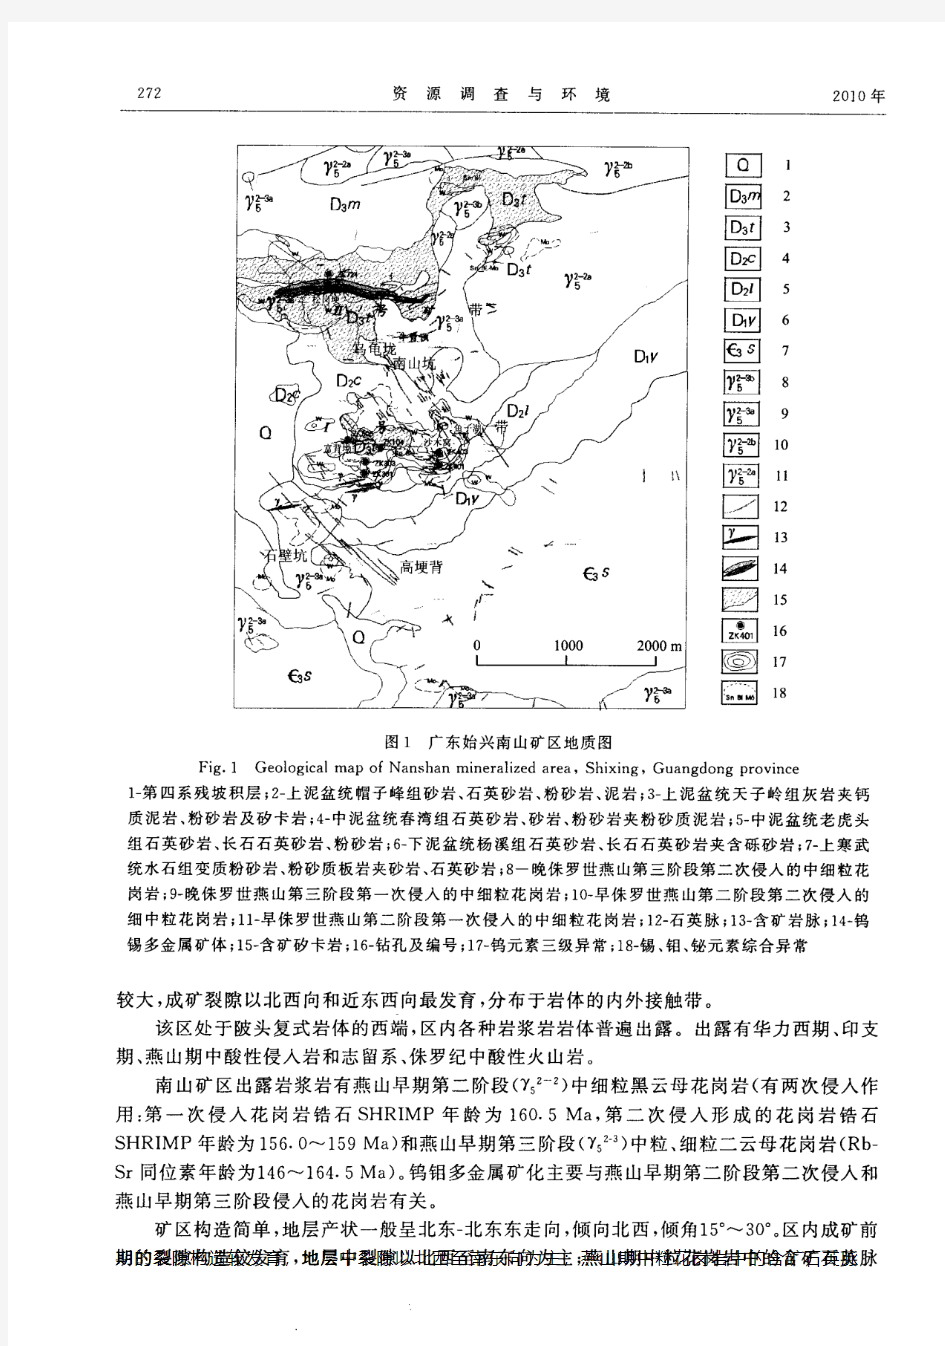 广东始兴南山矿区钨锡多金属矿床特征及资源潜力